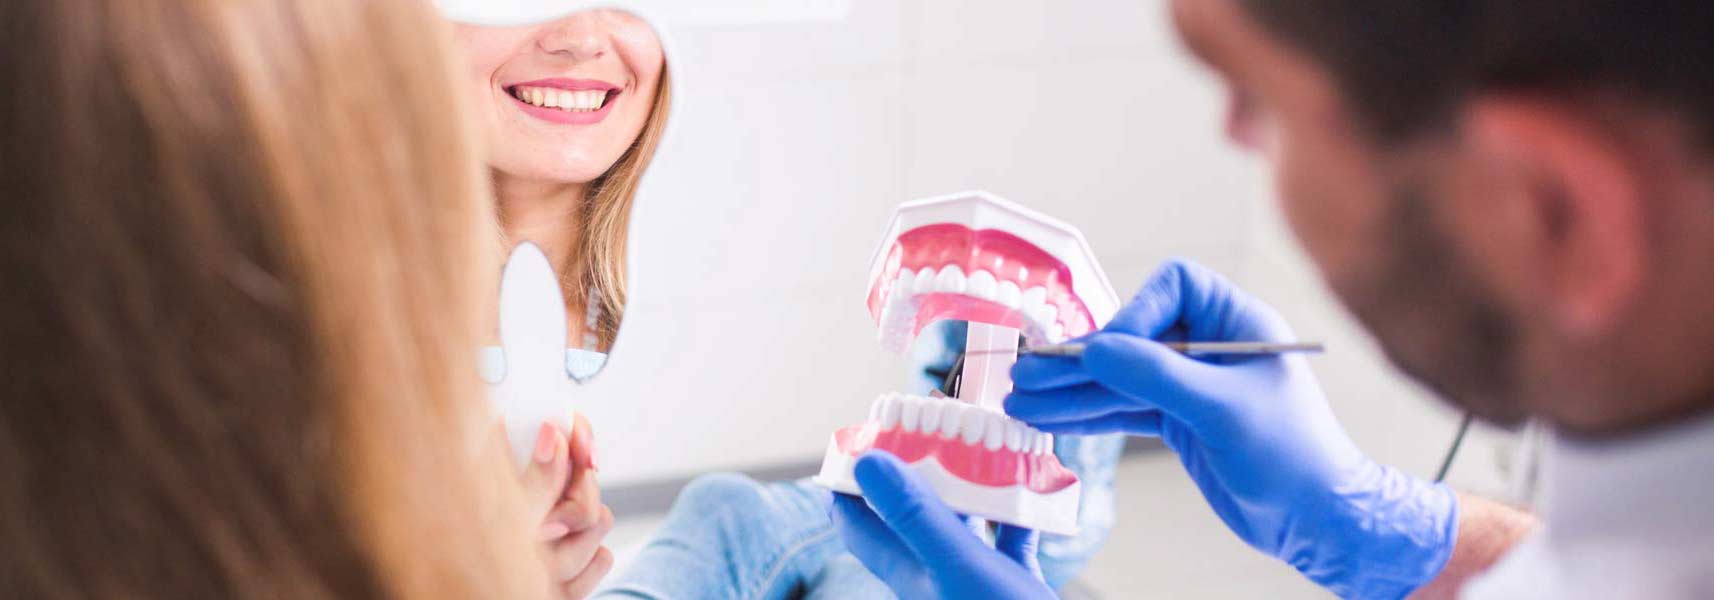 Rehabilitaciones orales complejas | Rubal Dental